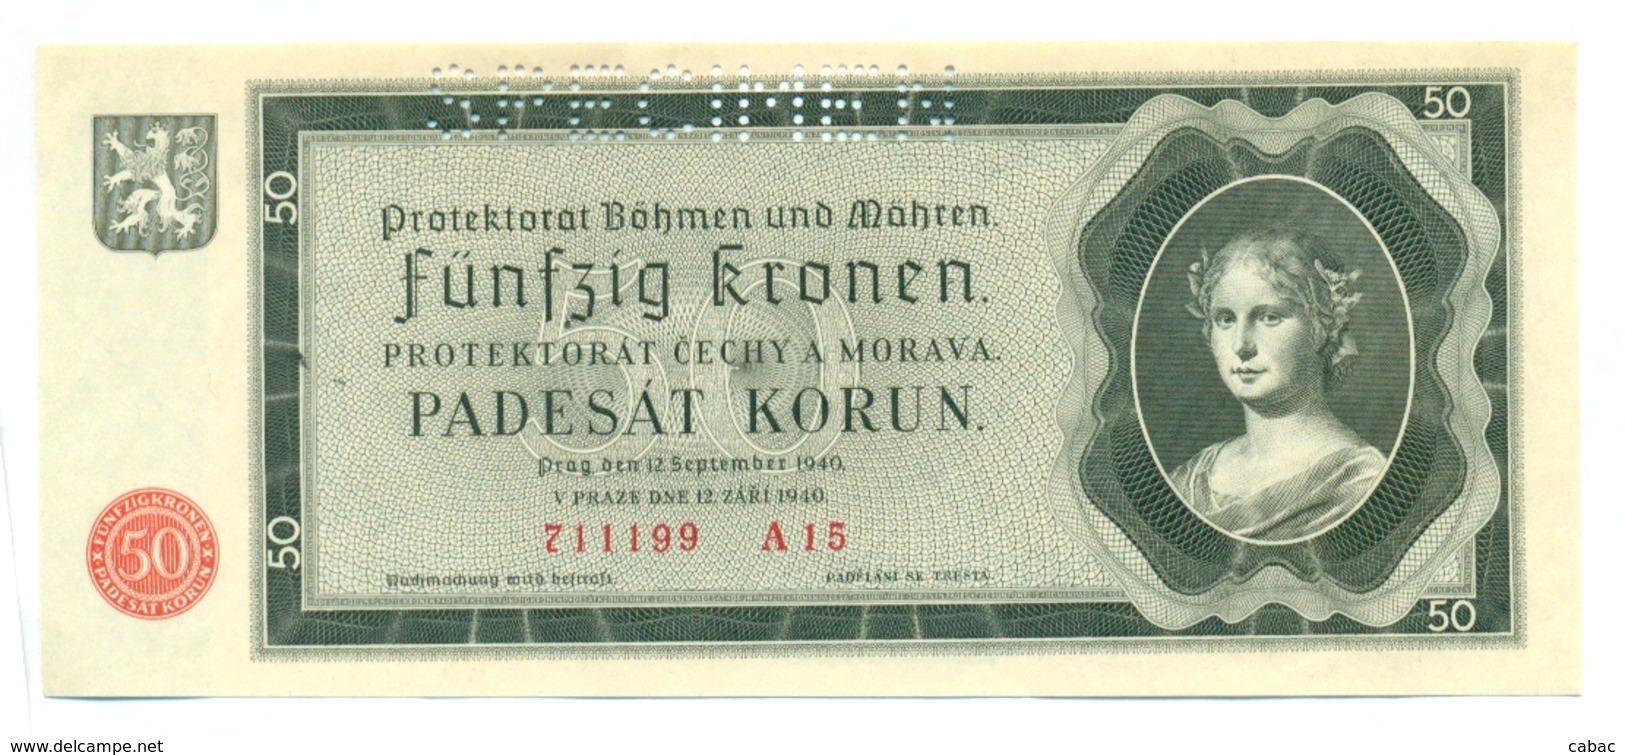 Funfzig Kronen, Padesat Korun, 50 Korun, PROTEKTORAT, 1940, SPECIMEN, Čechya Morava, A15 Bohemia Moravia - Tchécoslovaquie